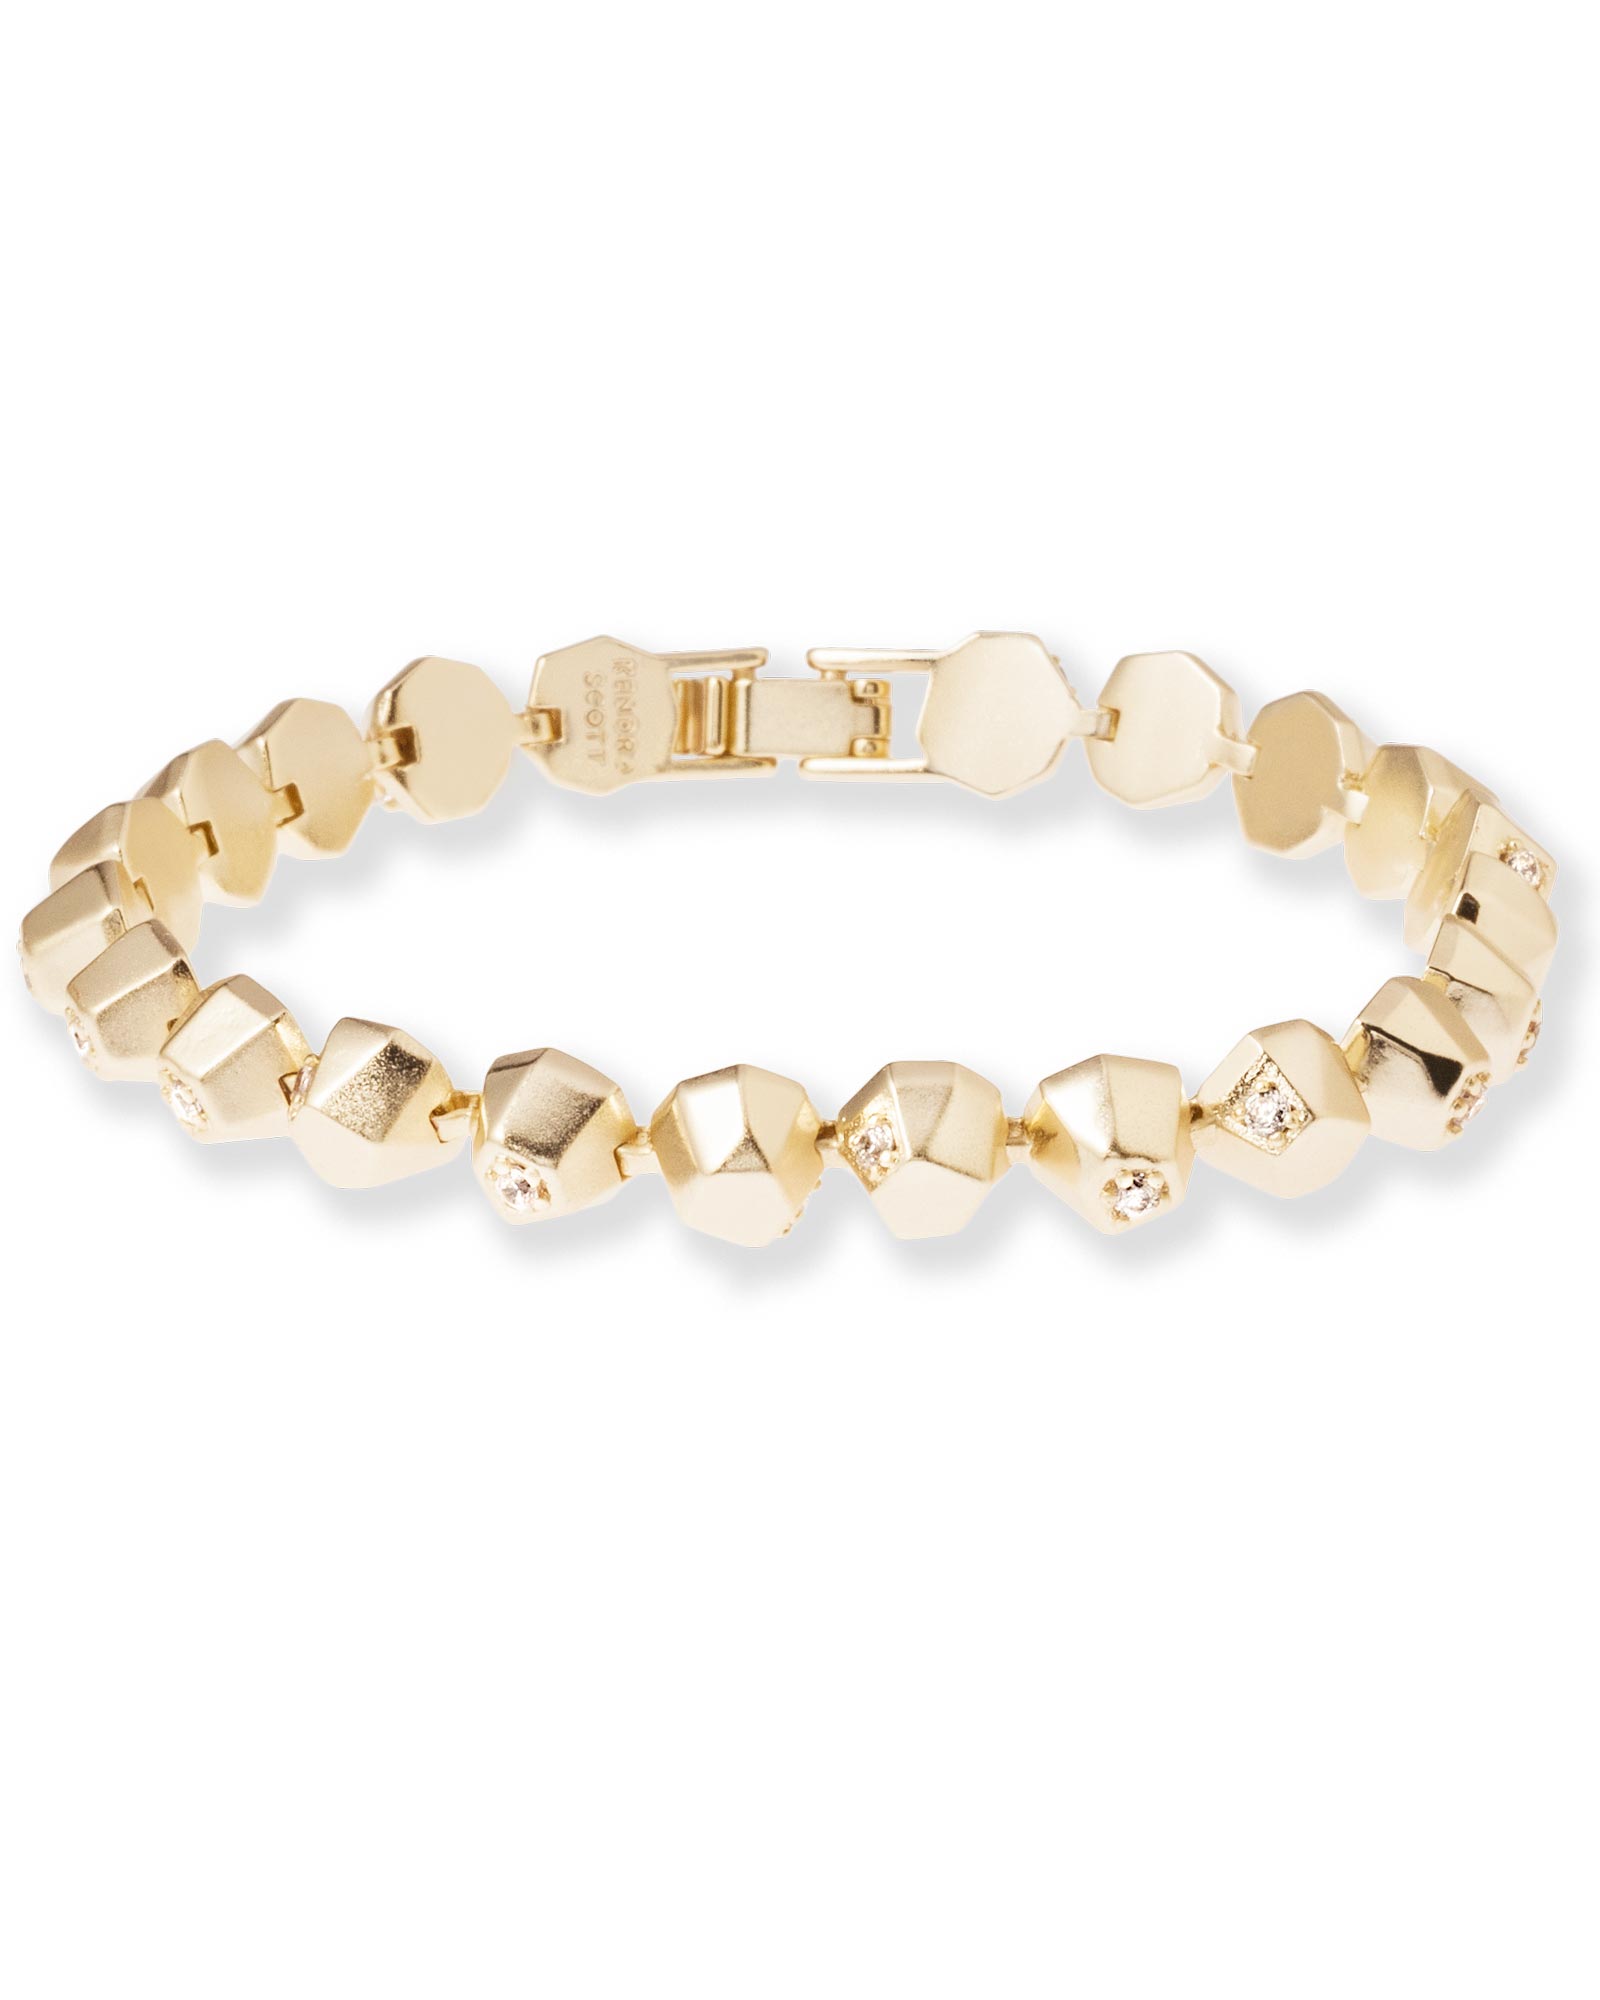 Posey Link Bracelet in Gold | Kendra Scott Jewelry